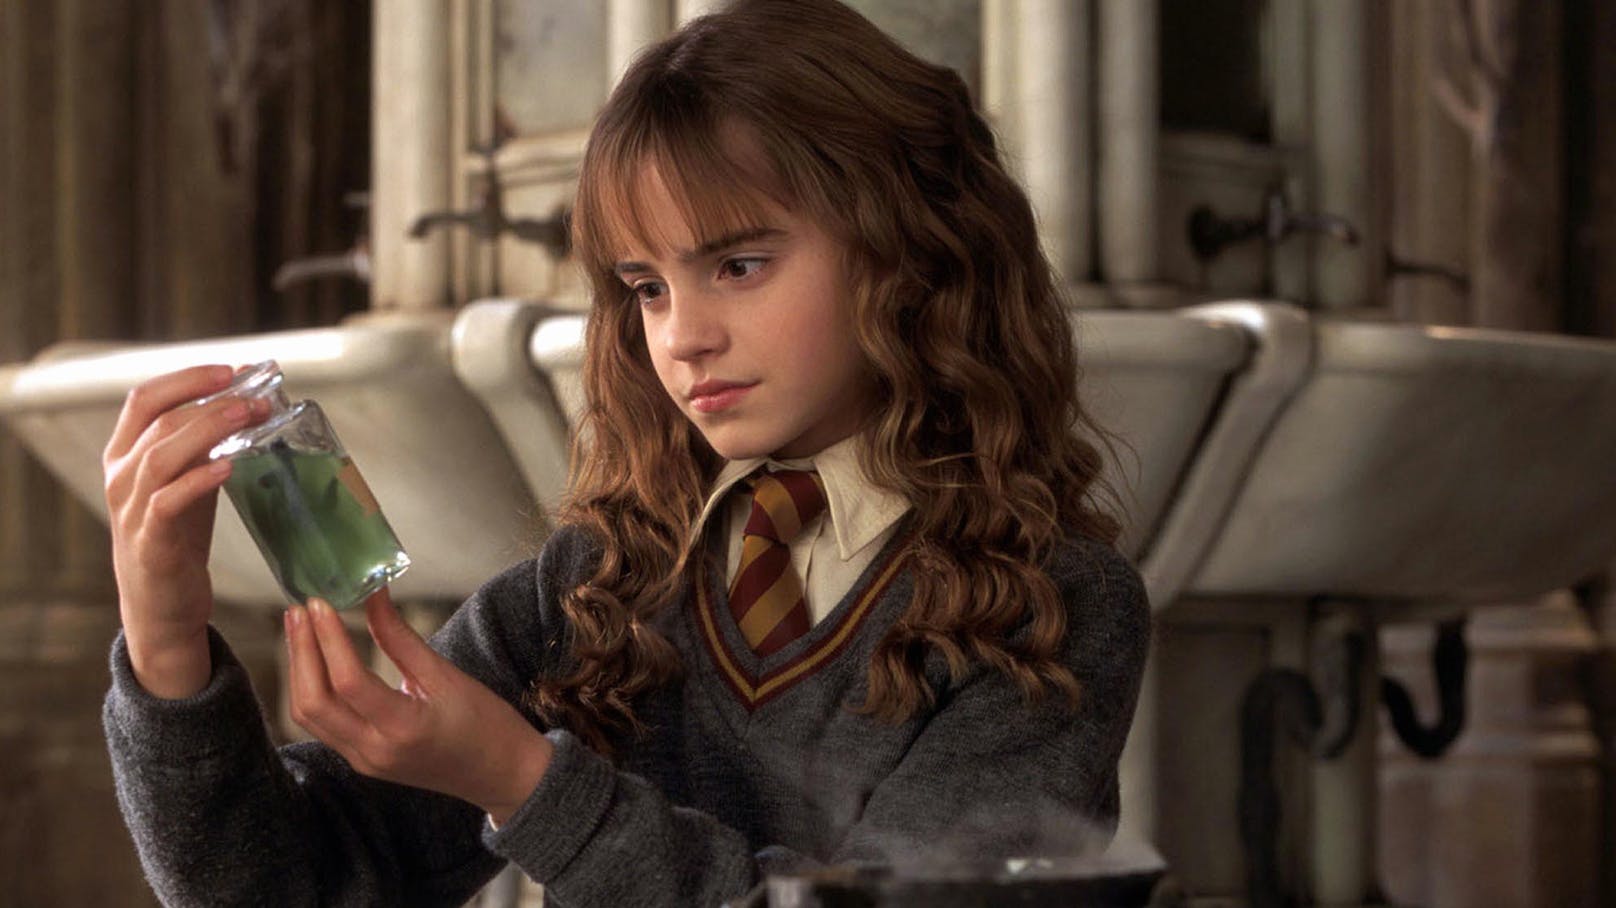 Als belesene Zauberschülerin Hermine wurde Schauspielerin <strong>Emma Watson</strong>&nbsp;mit den "Harry Potter"-Filmen berühmt. Der Wissensdurst ihrer Filmfigur begleitete die Darstellerin auch im wahren Leben und führte zu einer erfolgreichen Laufbahn an zwei Elite-Universitäten.